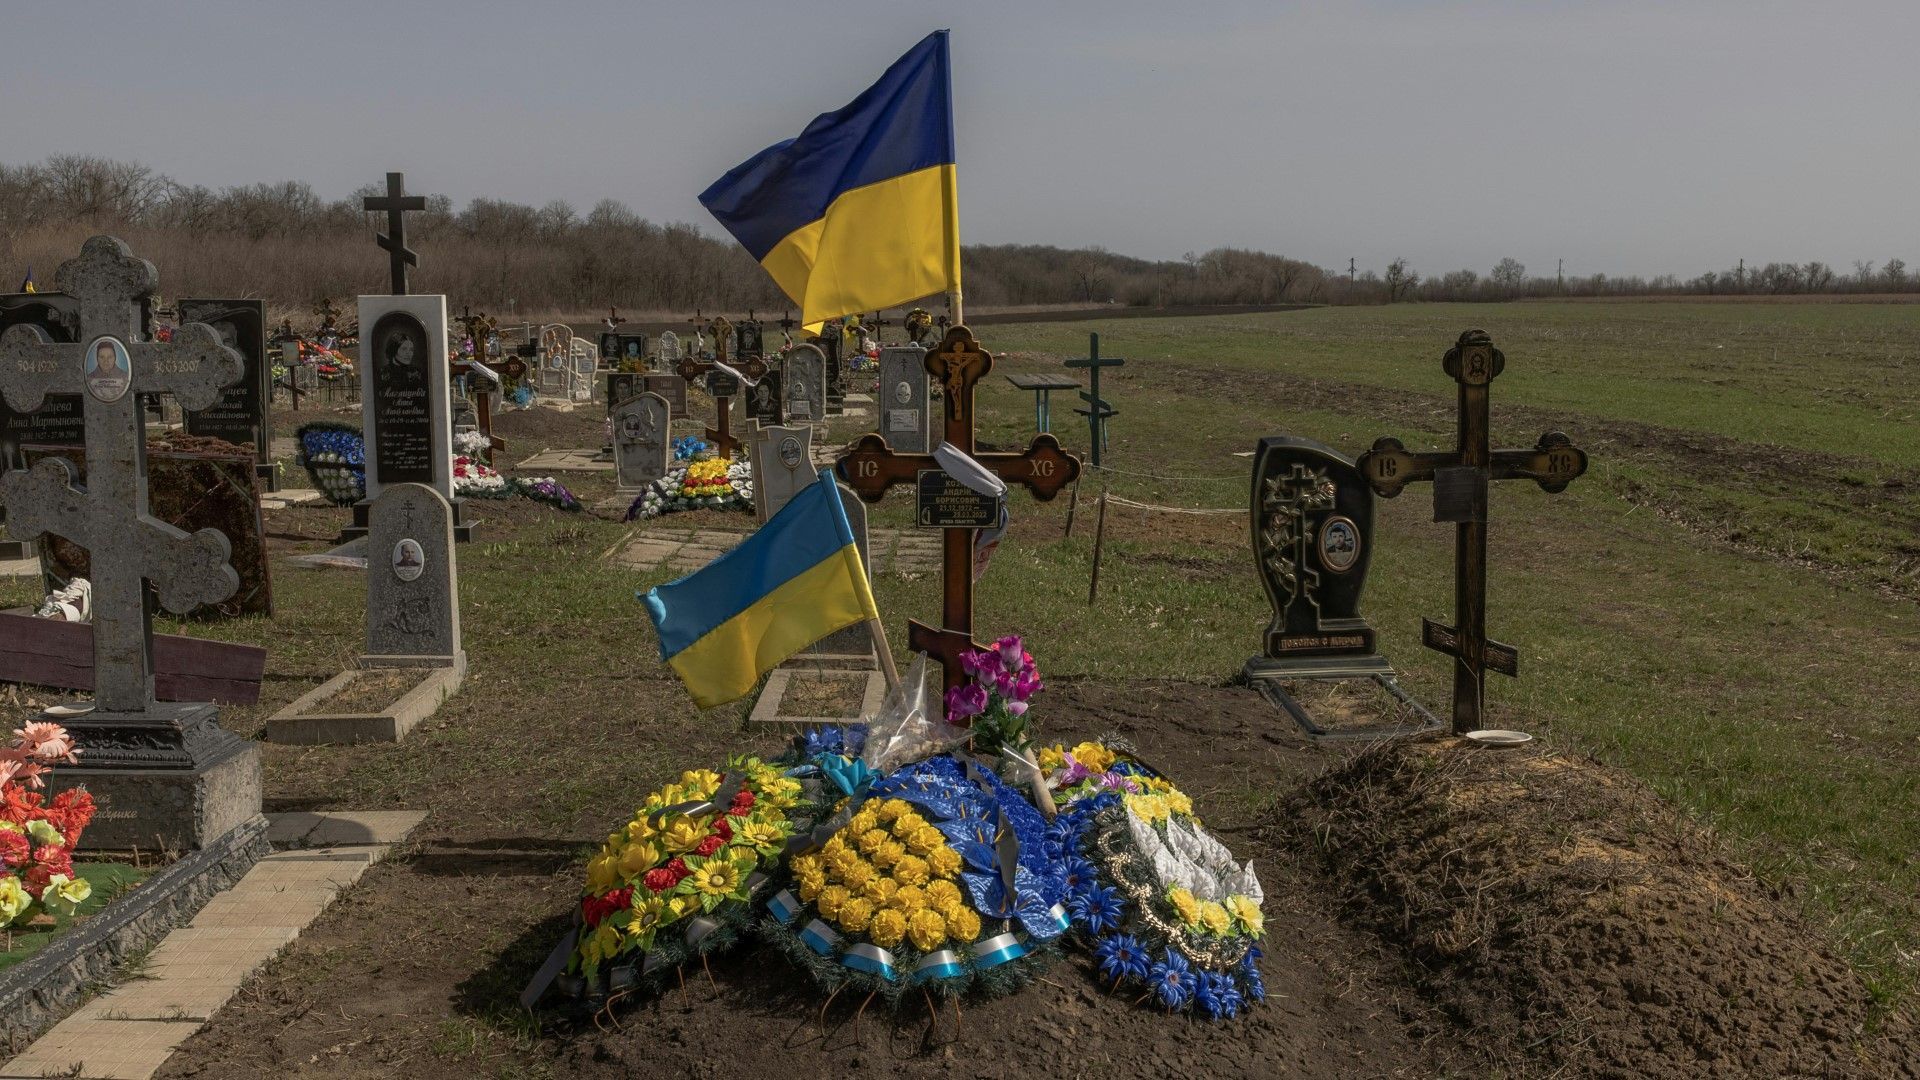 Wut auf pro-russische Verräter nach Angriff auf Dorf in der Ukraine